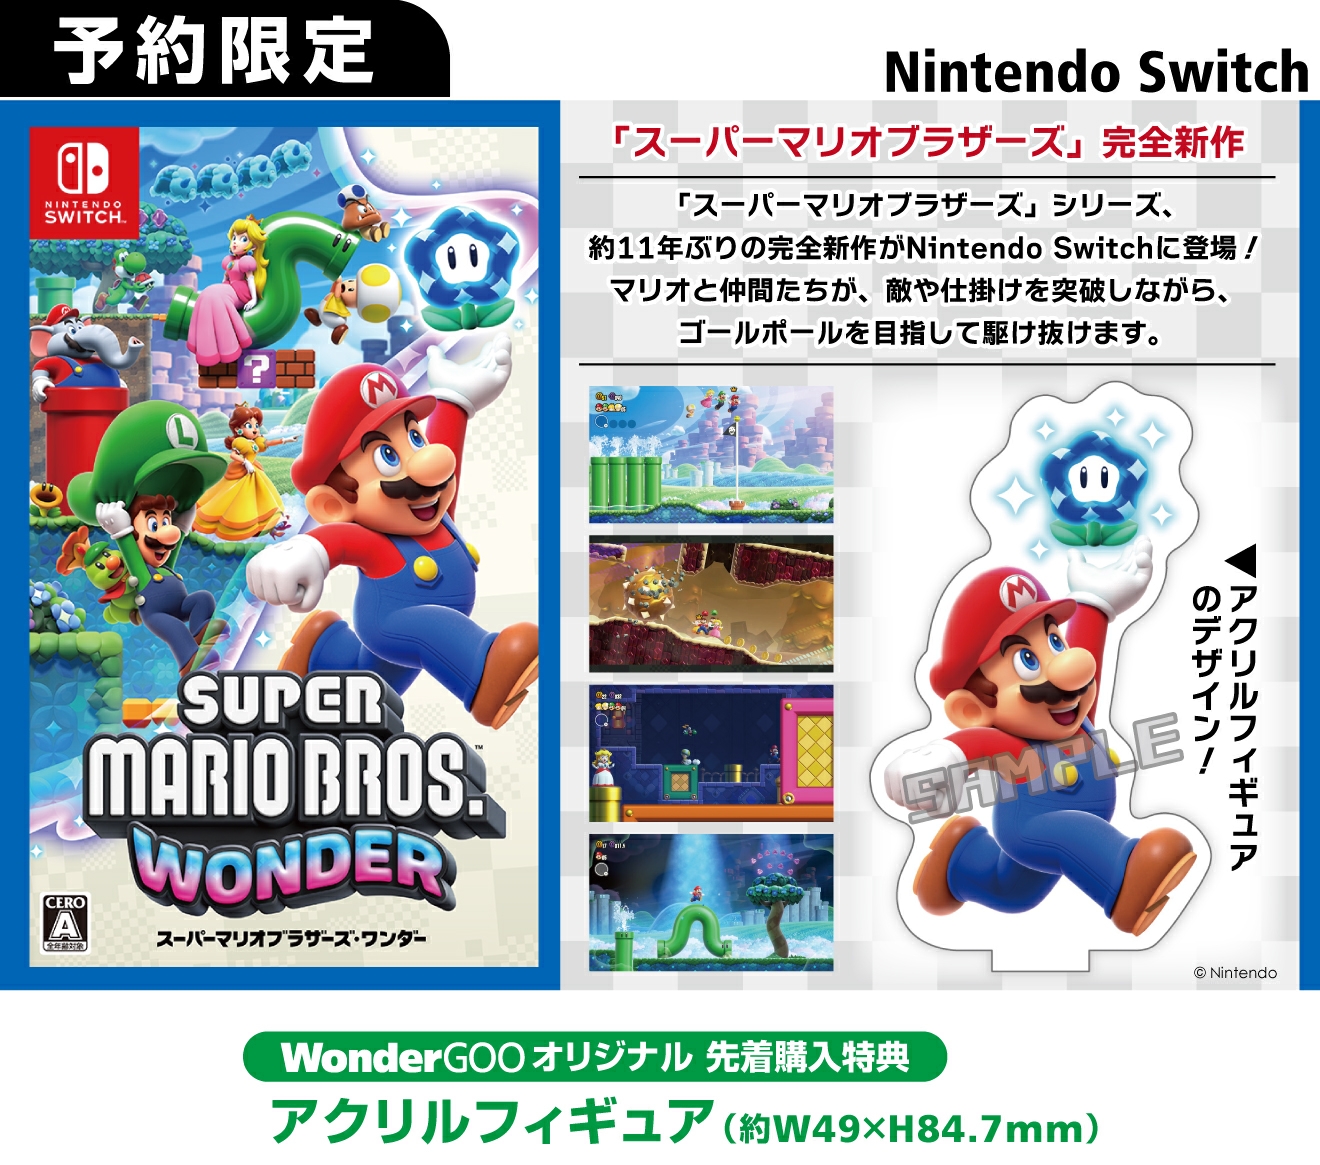 Nintendo Switch スーパーマリオブラザーズ ワンダー【先着特典